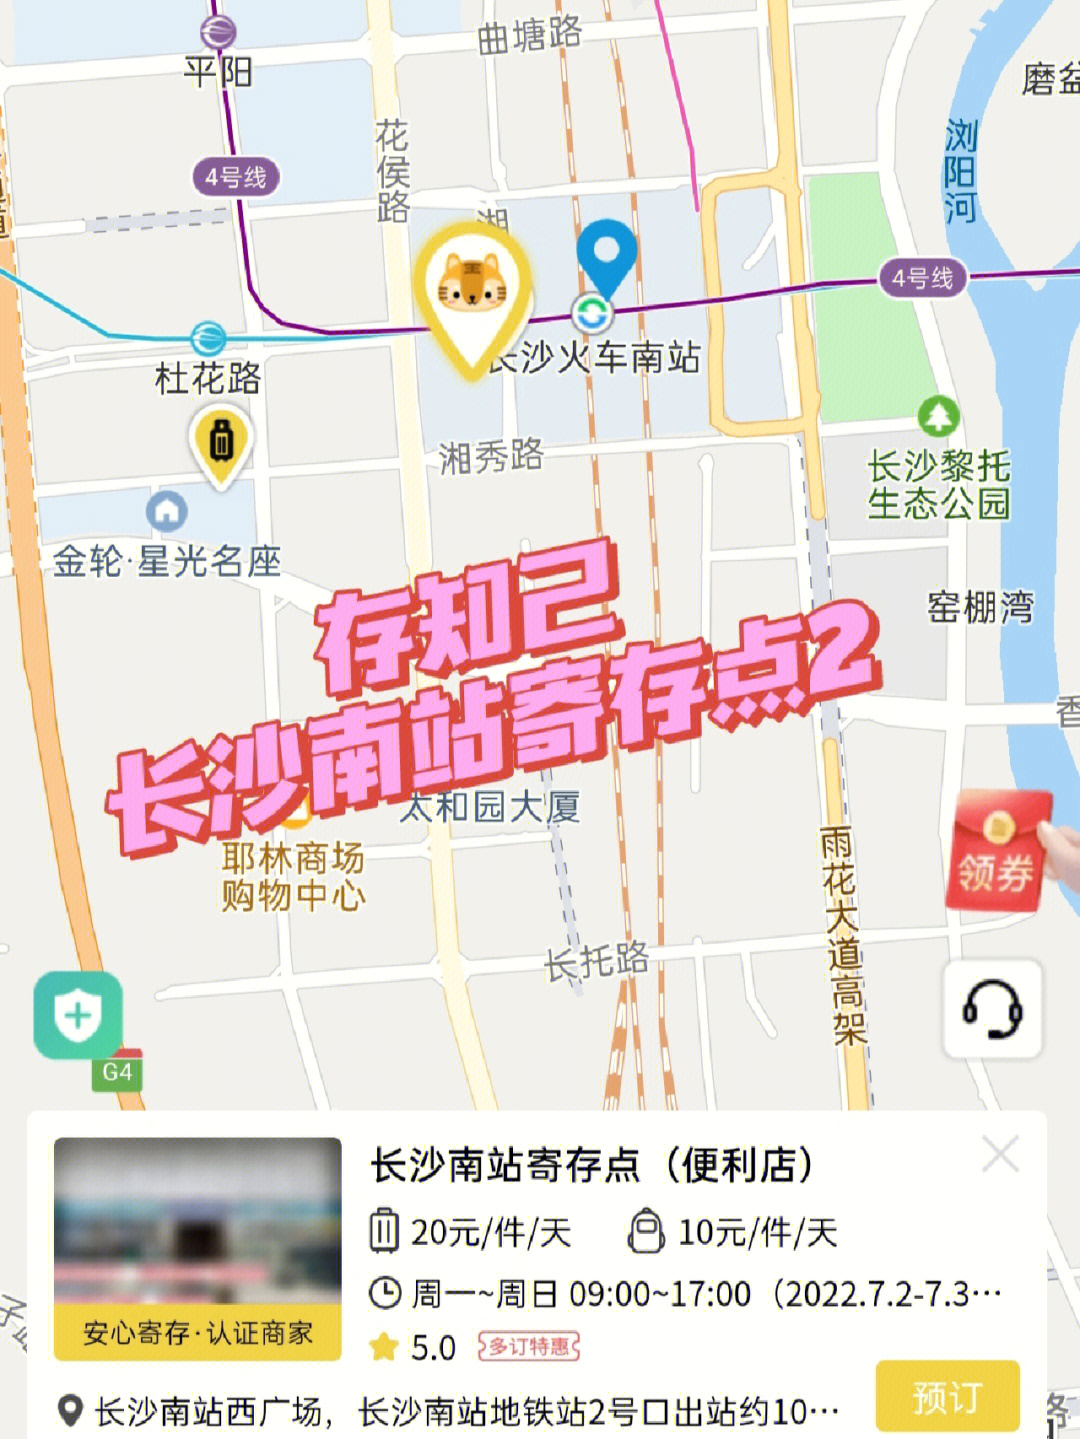 长沙南站地图内部图片